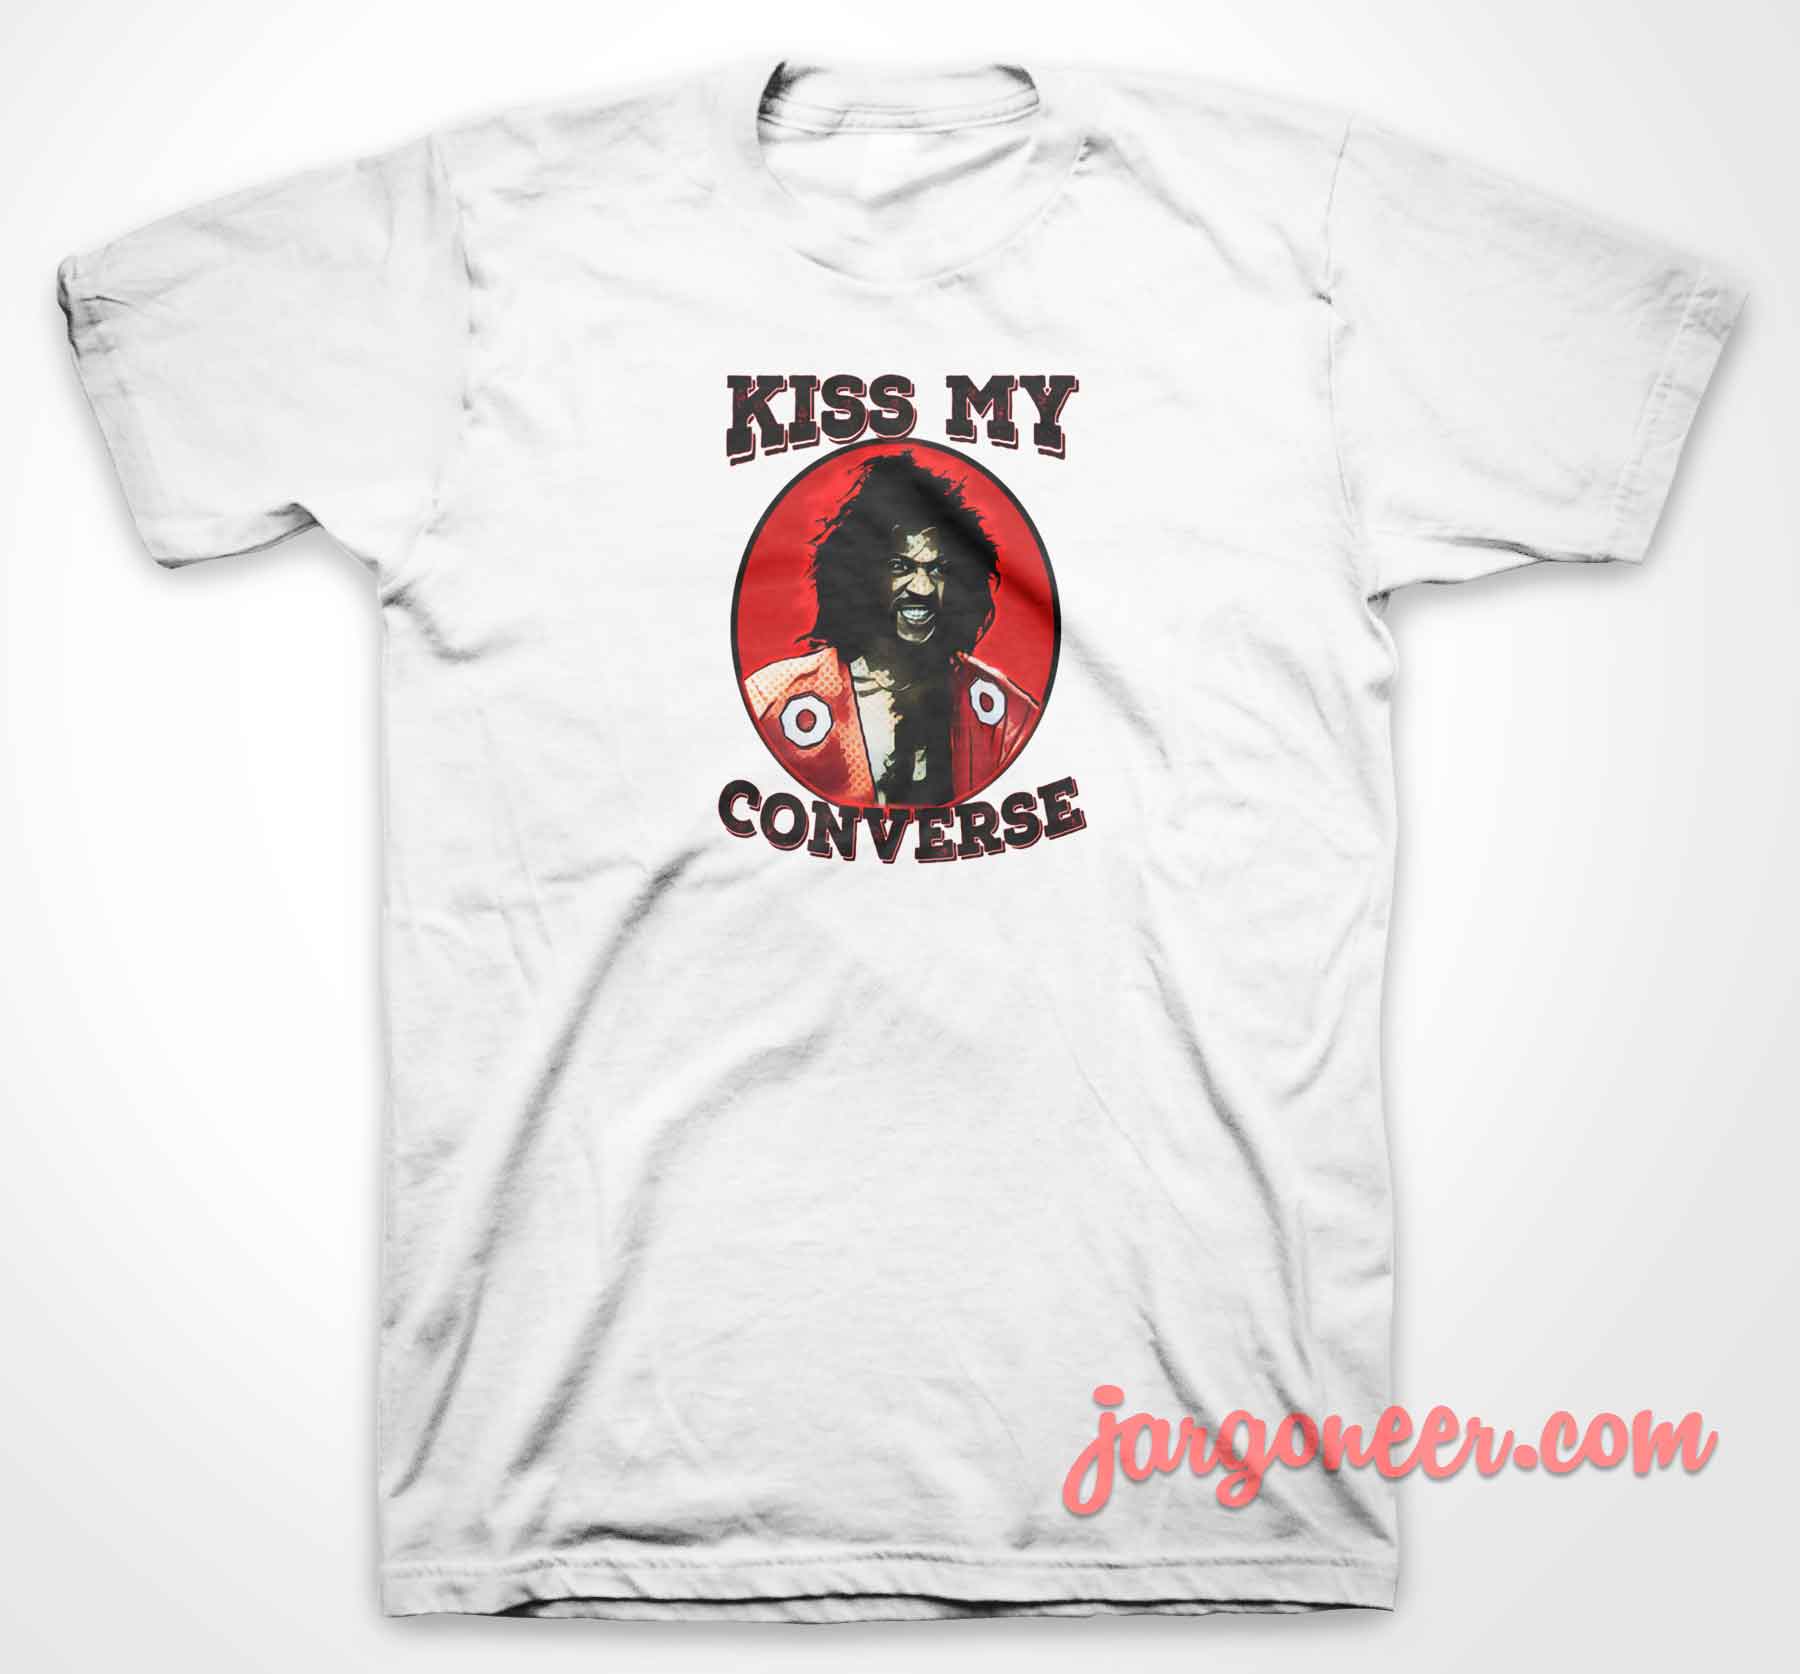 Kiss My Converse - Shop Unique Graphic Cool Shirt Designs